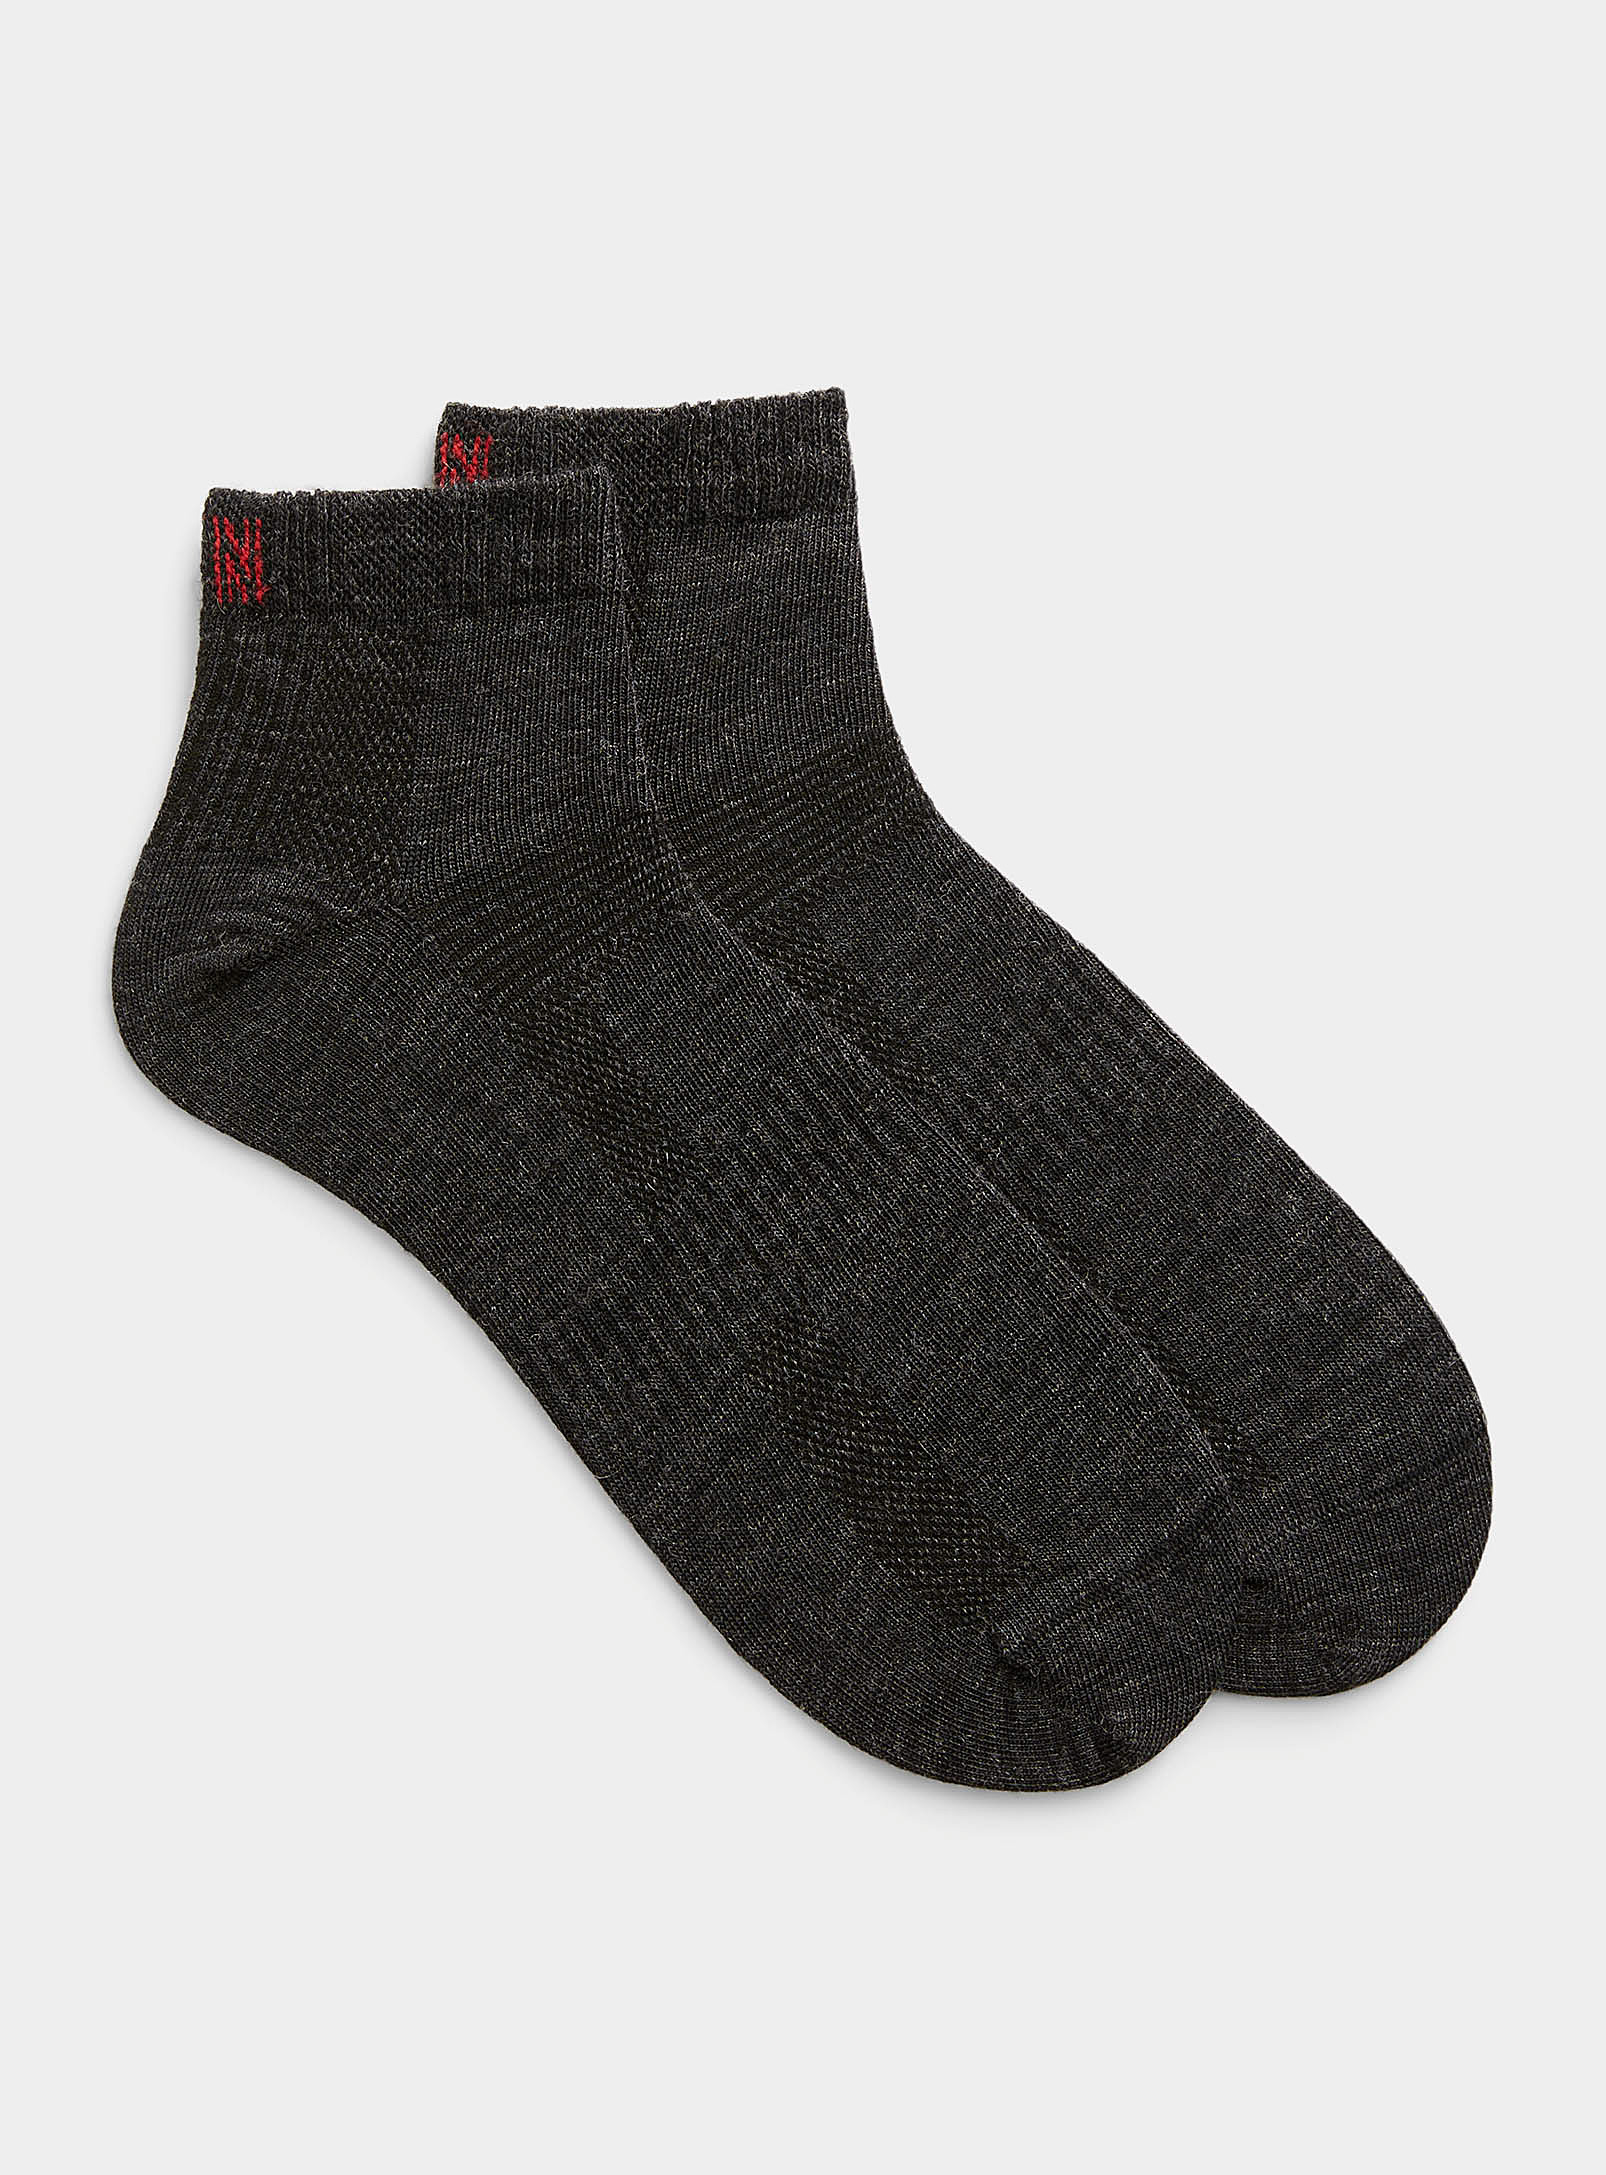 I.fiv5 Merino Hiking Socks Set Of 2 In Charcoal